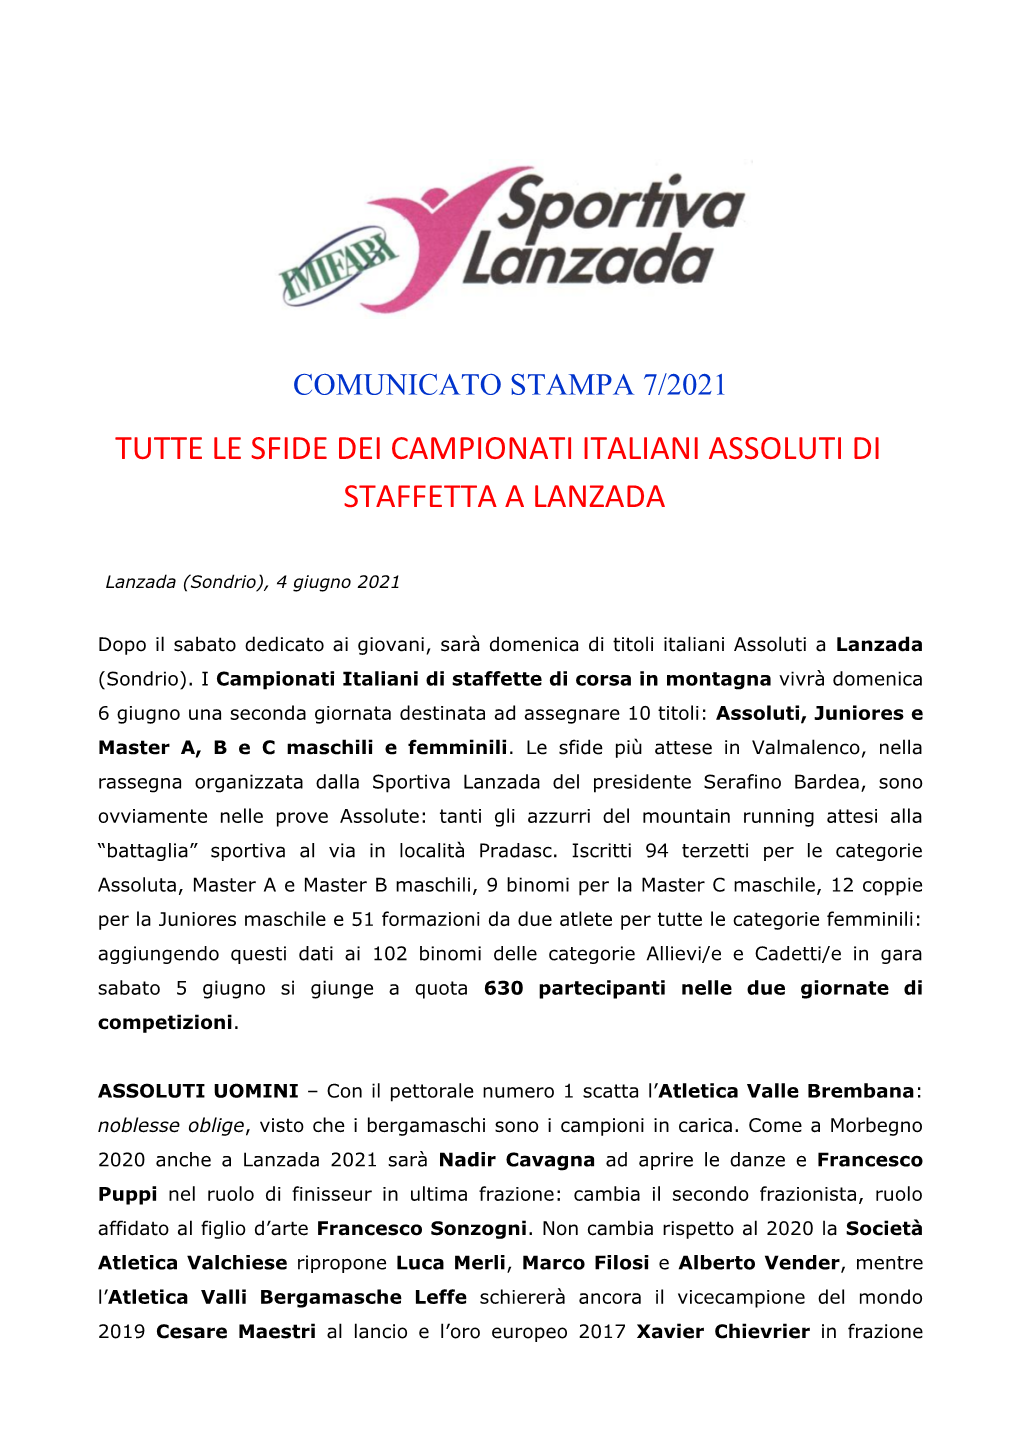 Tutte Le Sfide Dei Campionati Italiani Assoluti Di Staffetta a Lanzada